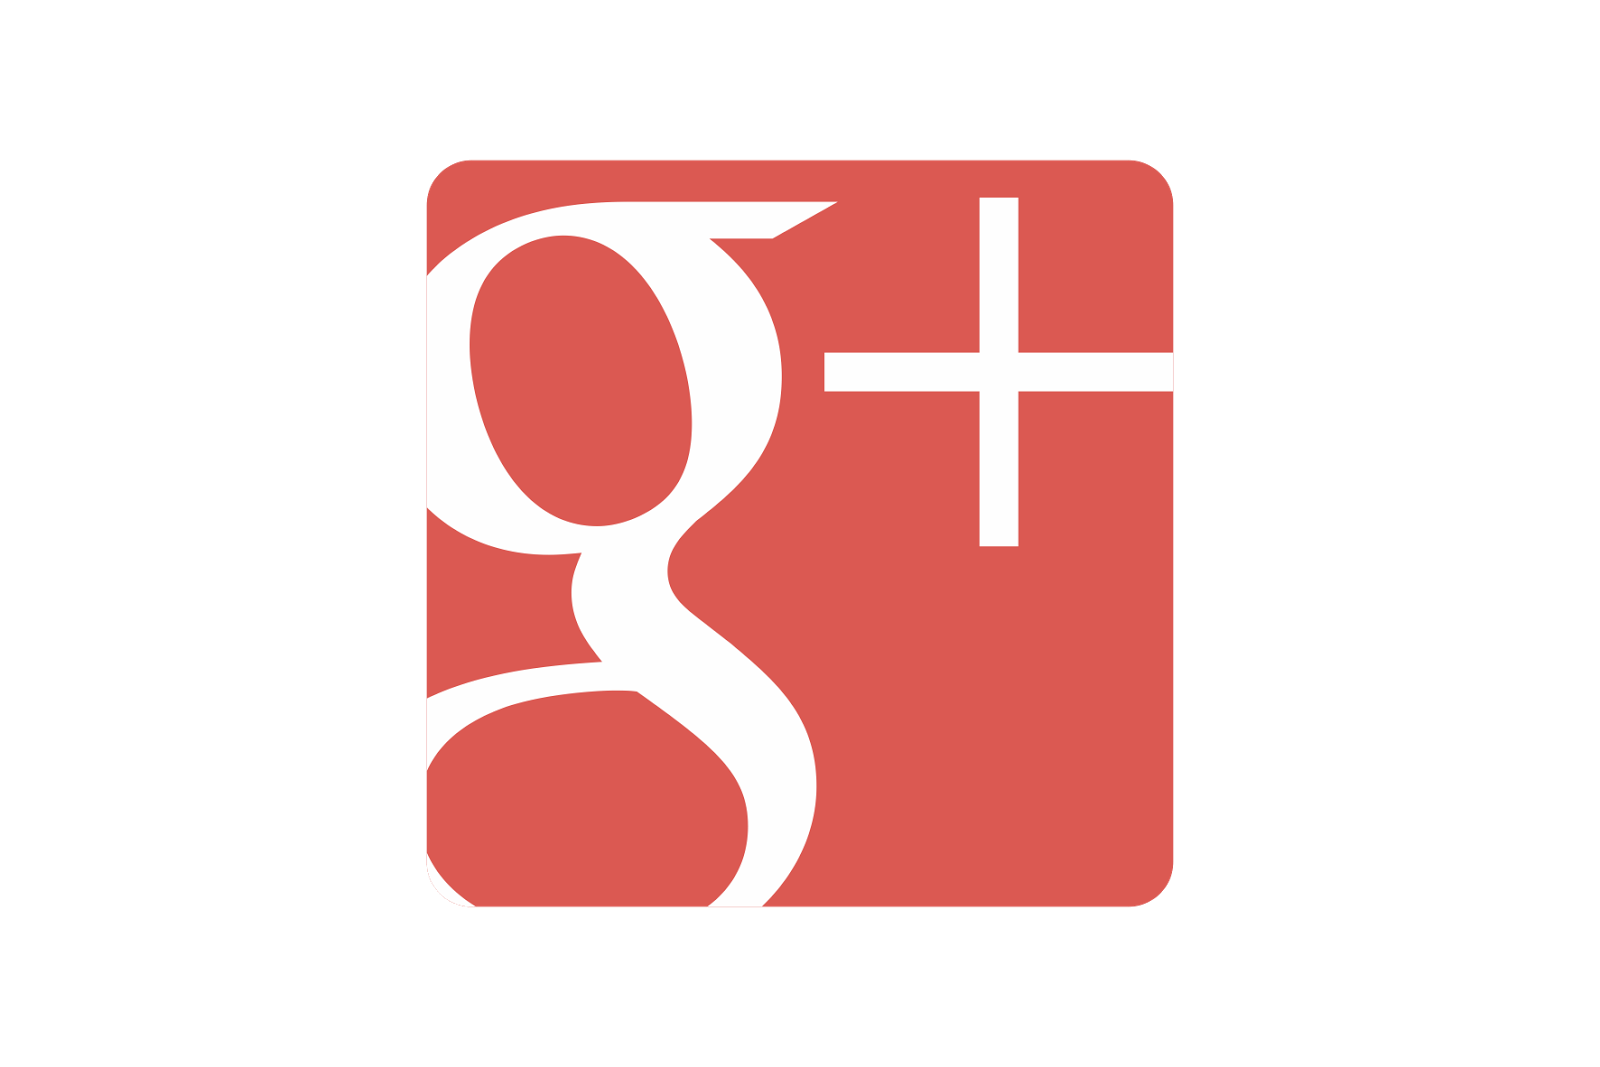 Google Google Plus Logo - Google Plus Logo Png Image